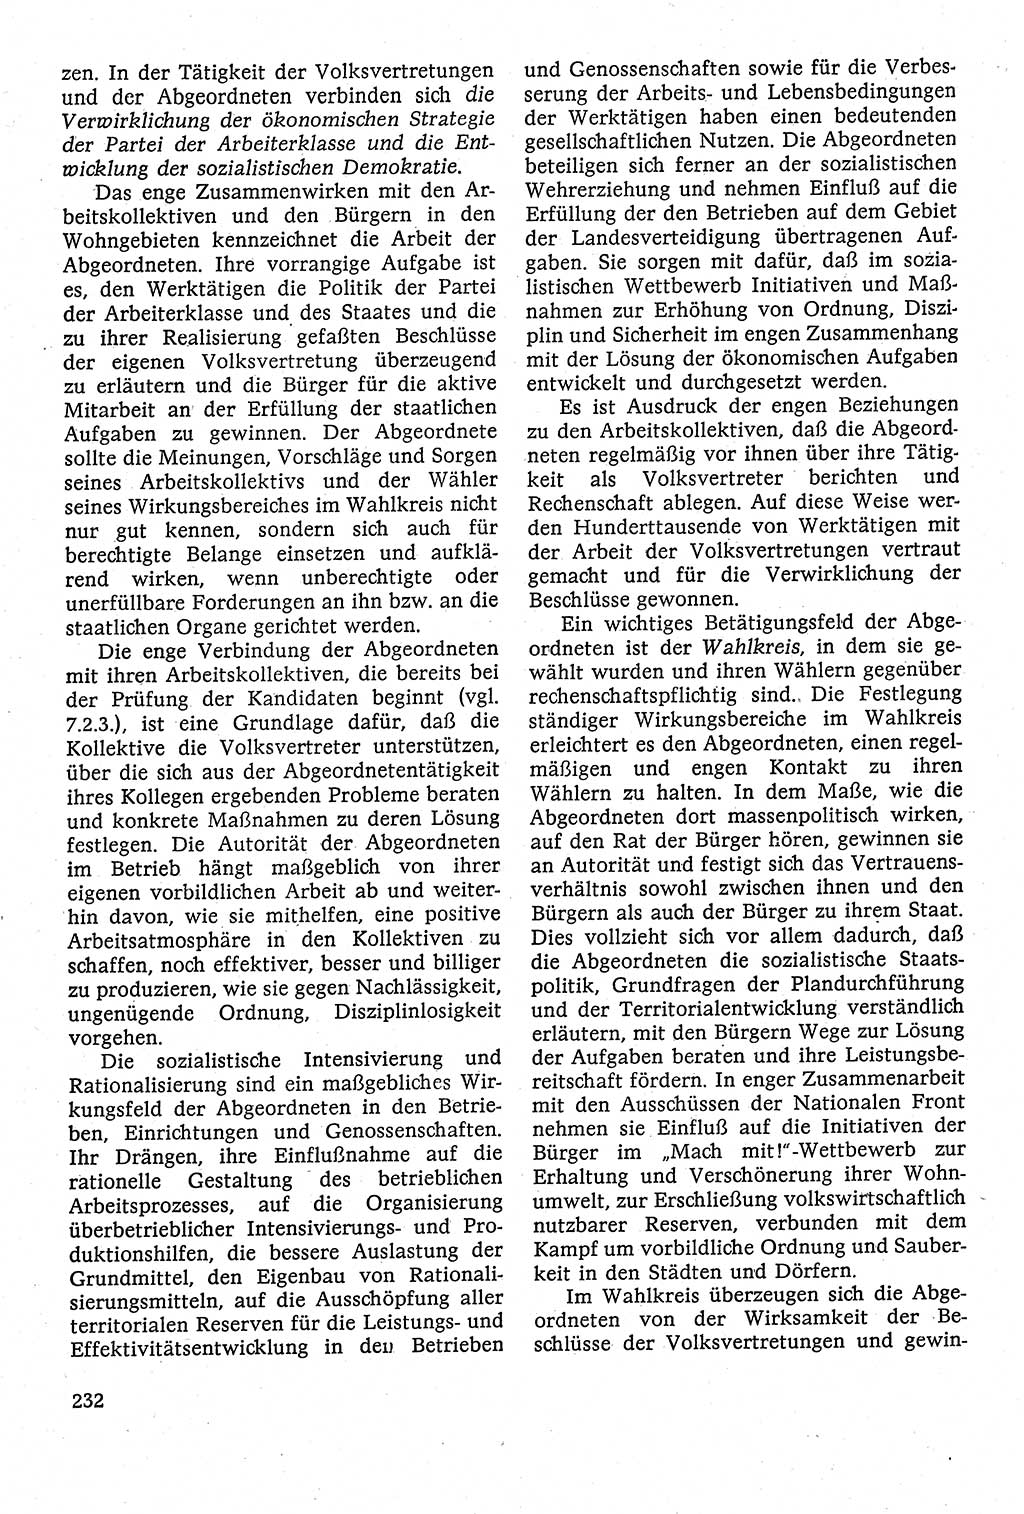 Staatsrecht der DDR [Deutsche Demokratische Republik (DDR)], Lehrbuch 1984, Seite 232 (St.-R. DDR Lb. 1984, S. 232)